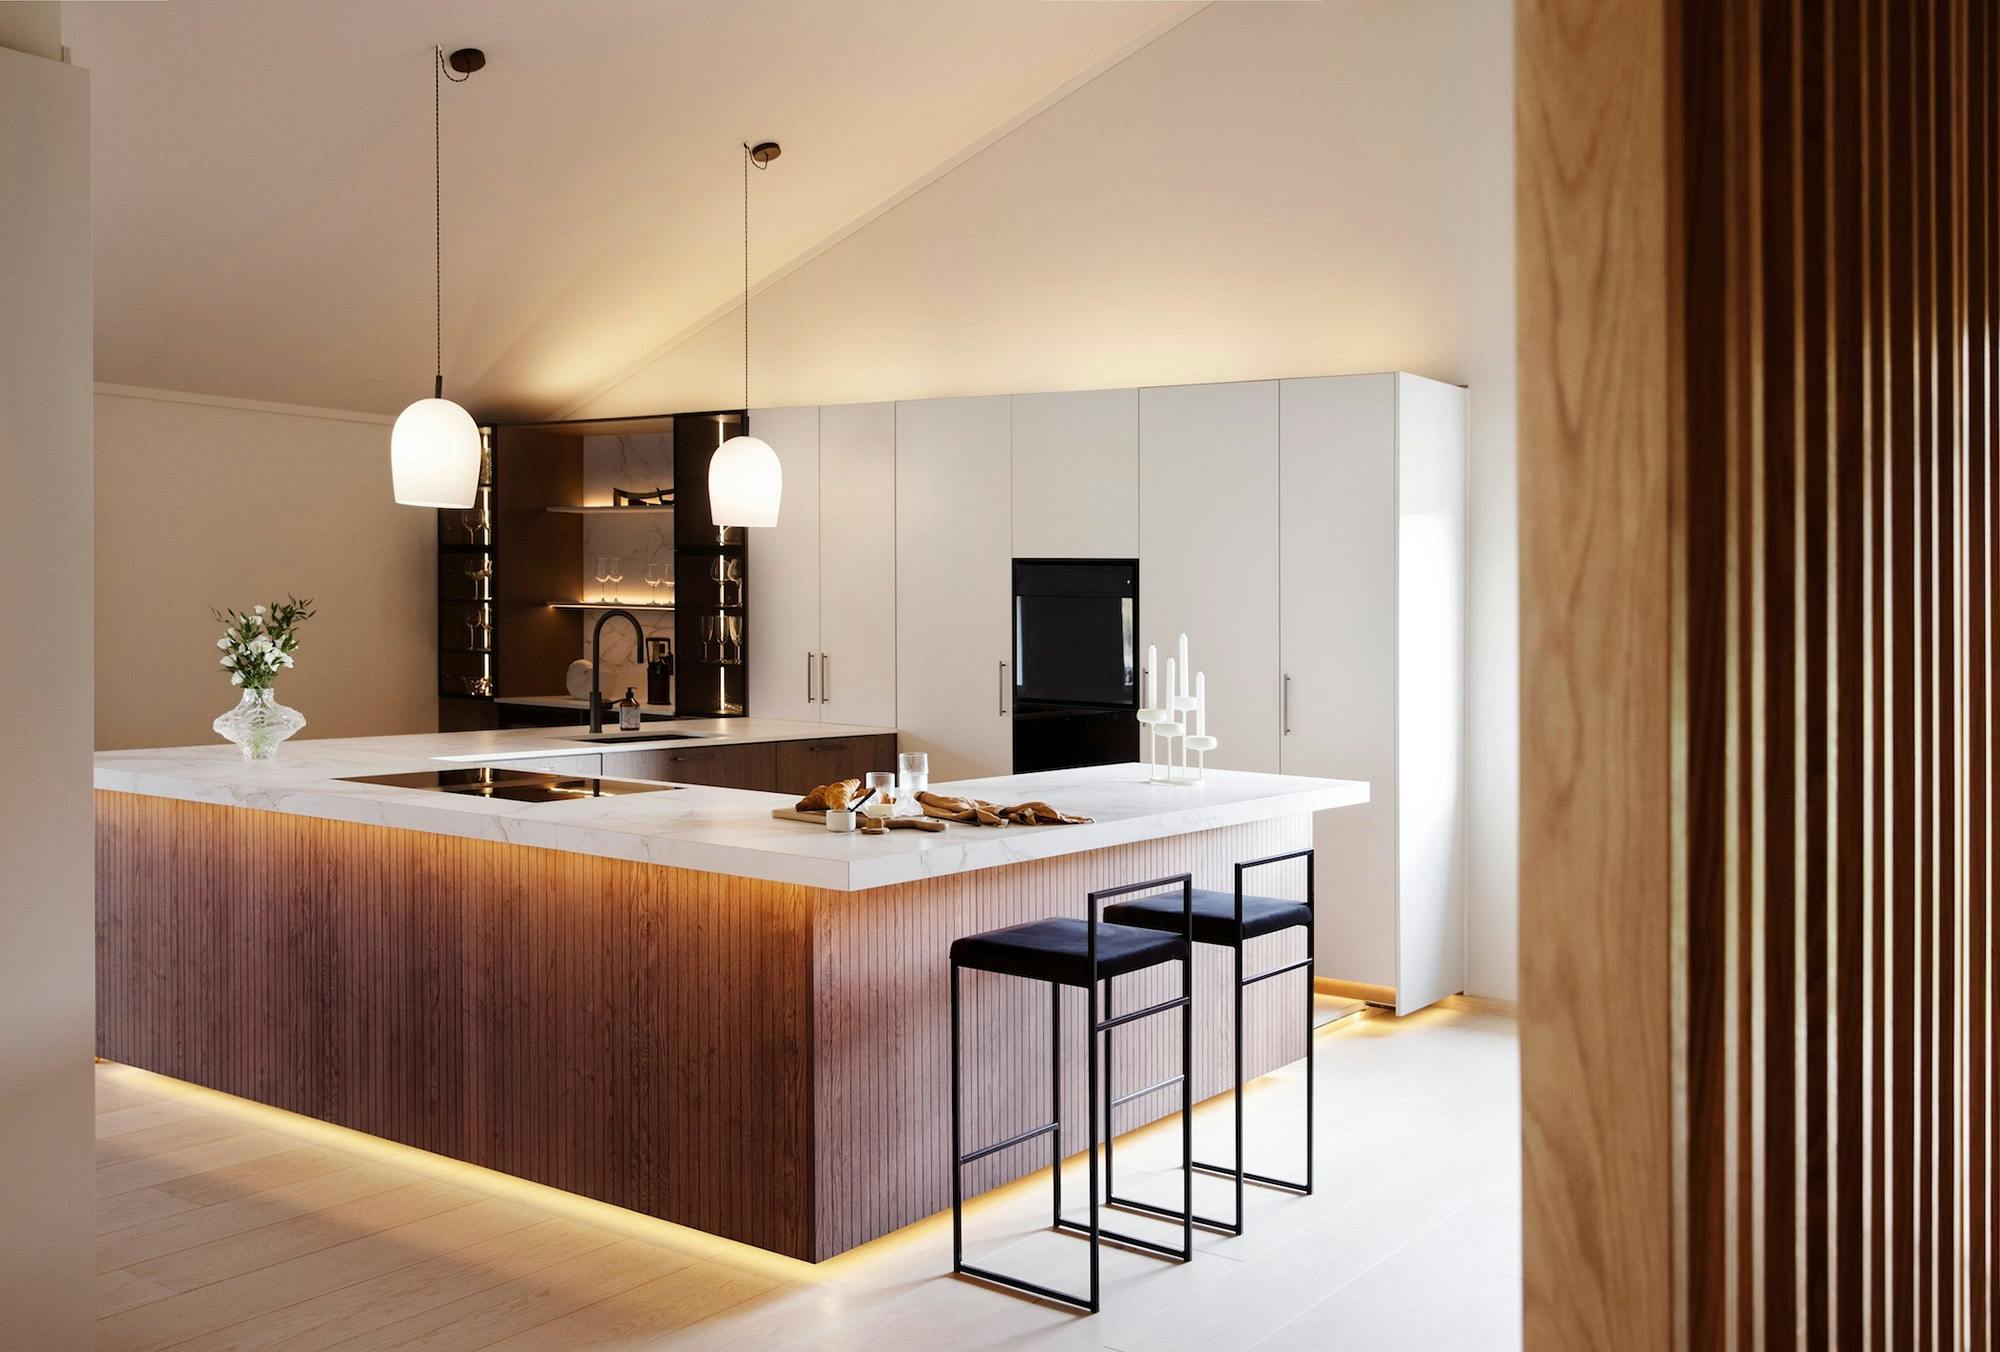 Numero immagine 42 della sezione corrente di DKTN Arga creates an elegant atmosphere in this open plan kitchen with a minimalist approach di Cosentino Italia